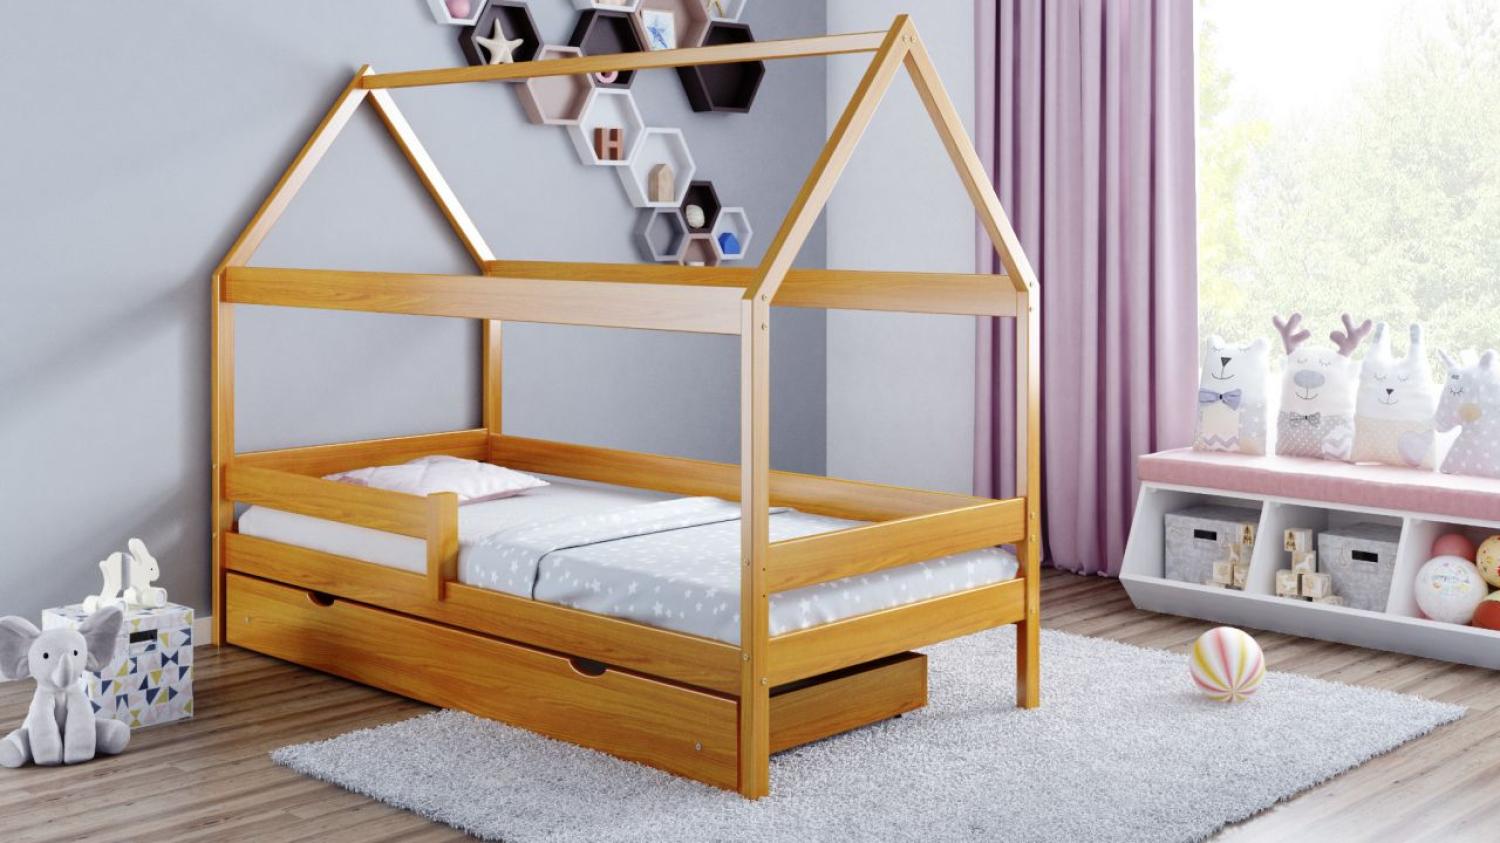 Kinderbettenwelt 'Home Plus' Hausbett 80x160 cm, braun, Kiefer massiv, mit Schublade und Matratze Bild 1